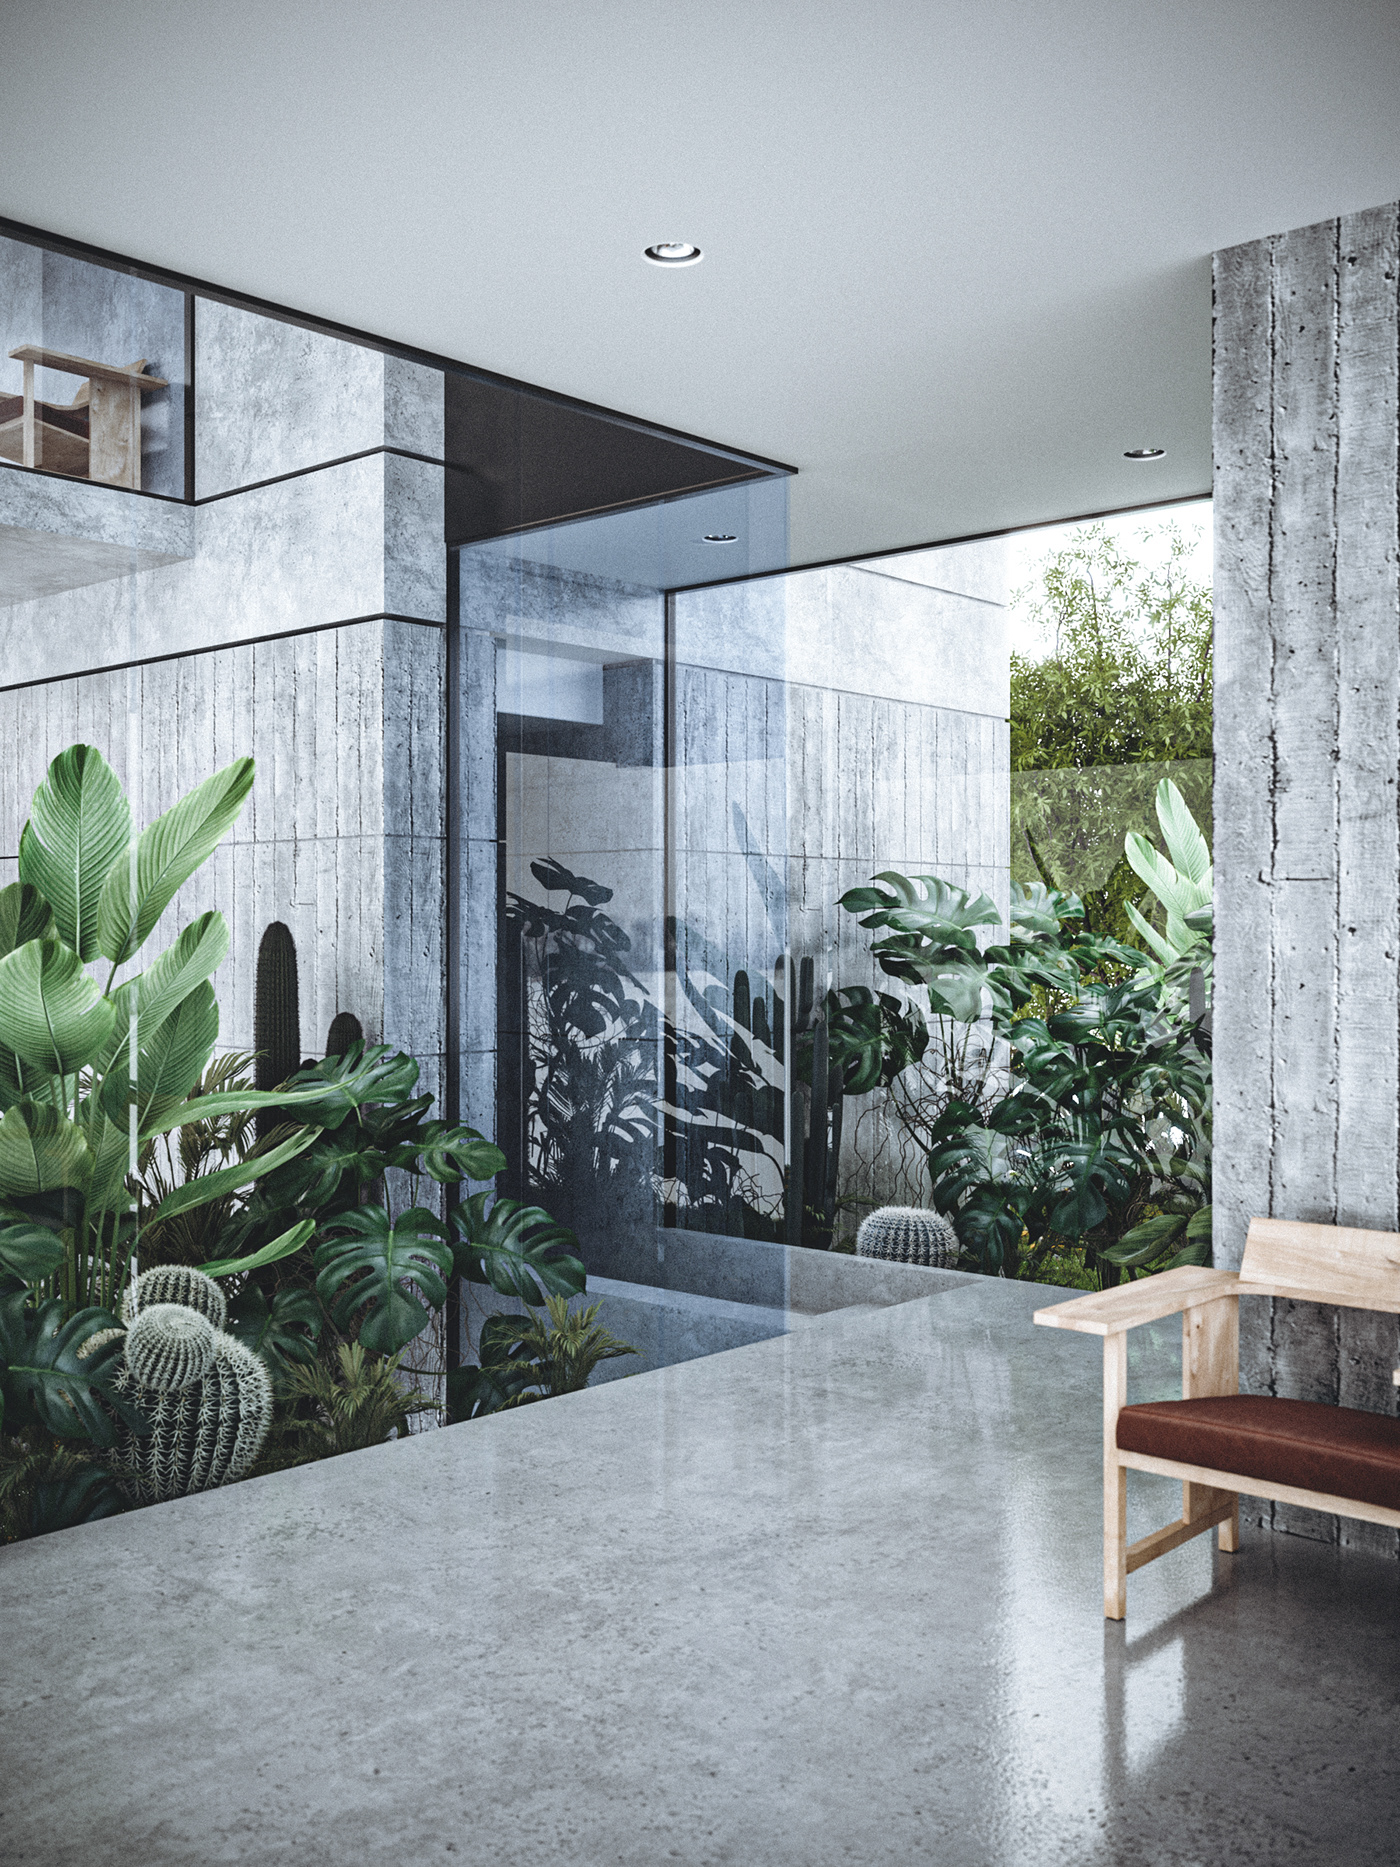 architecture Nature interior design  CGI 3dsmax vray breathing Interior Spaces